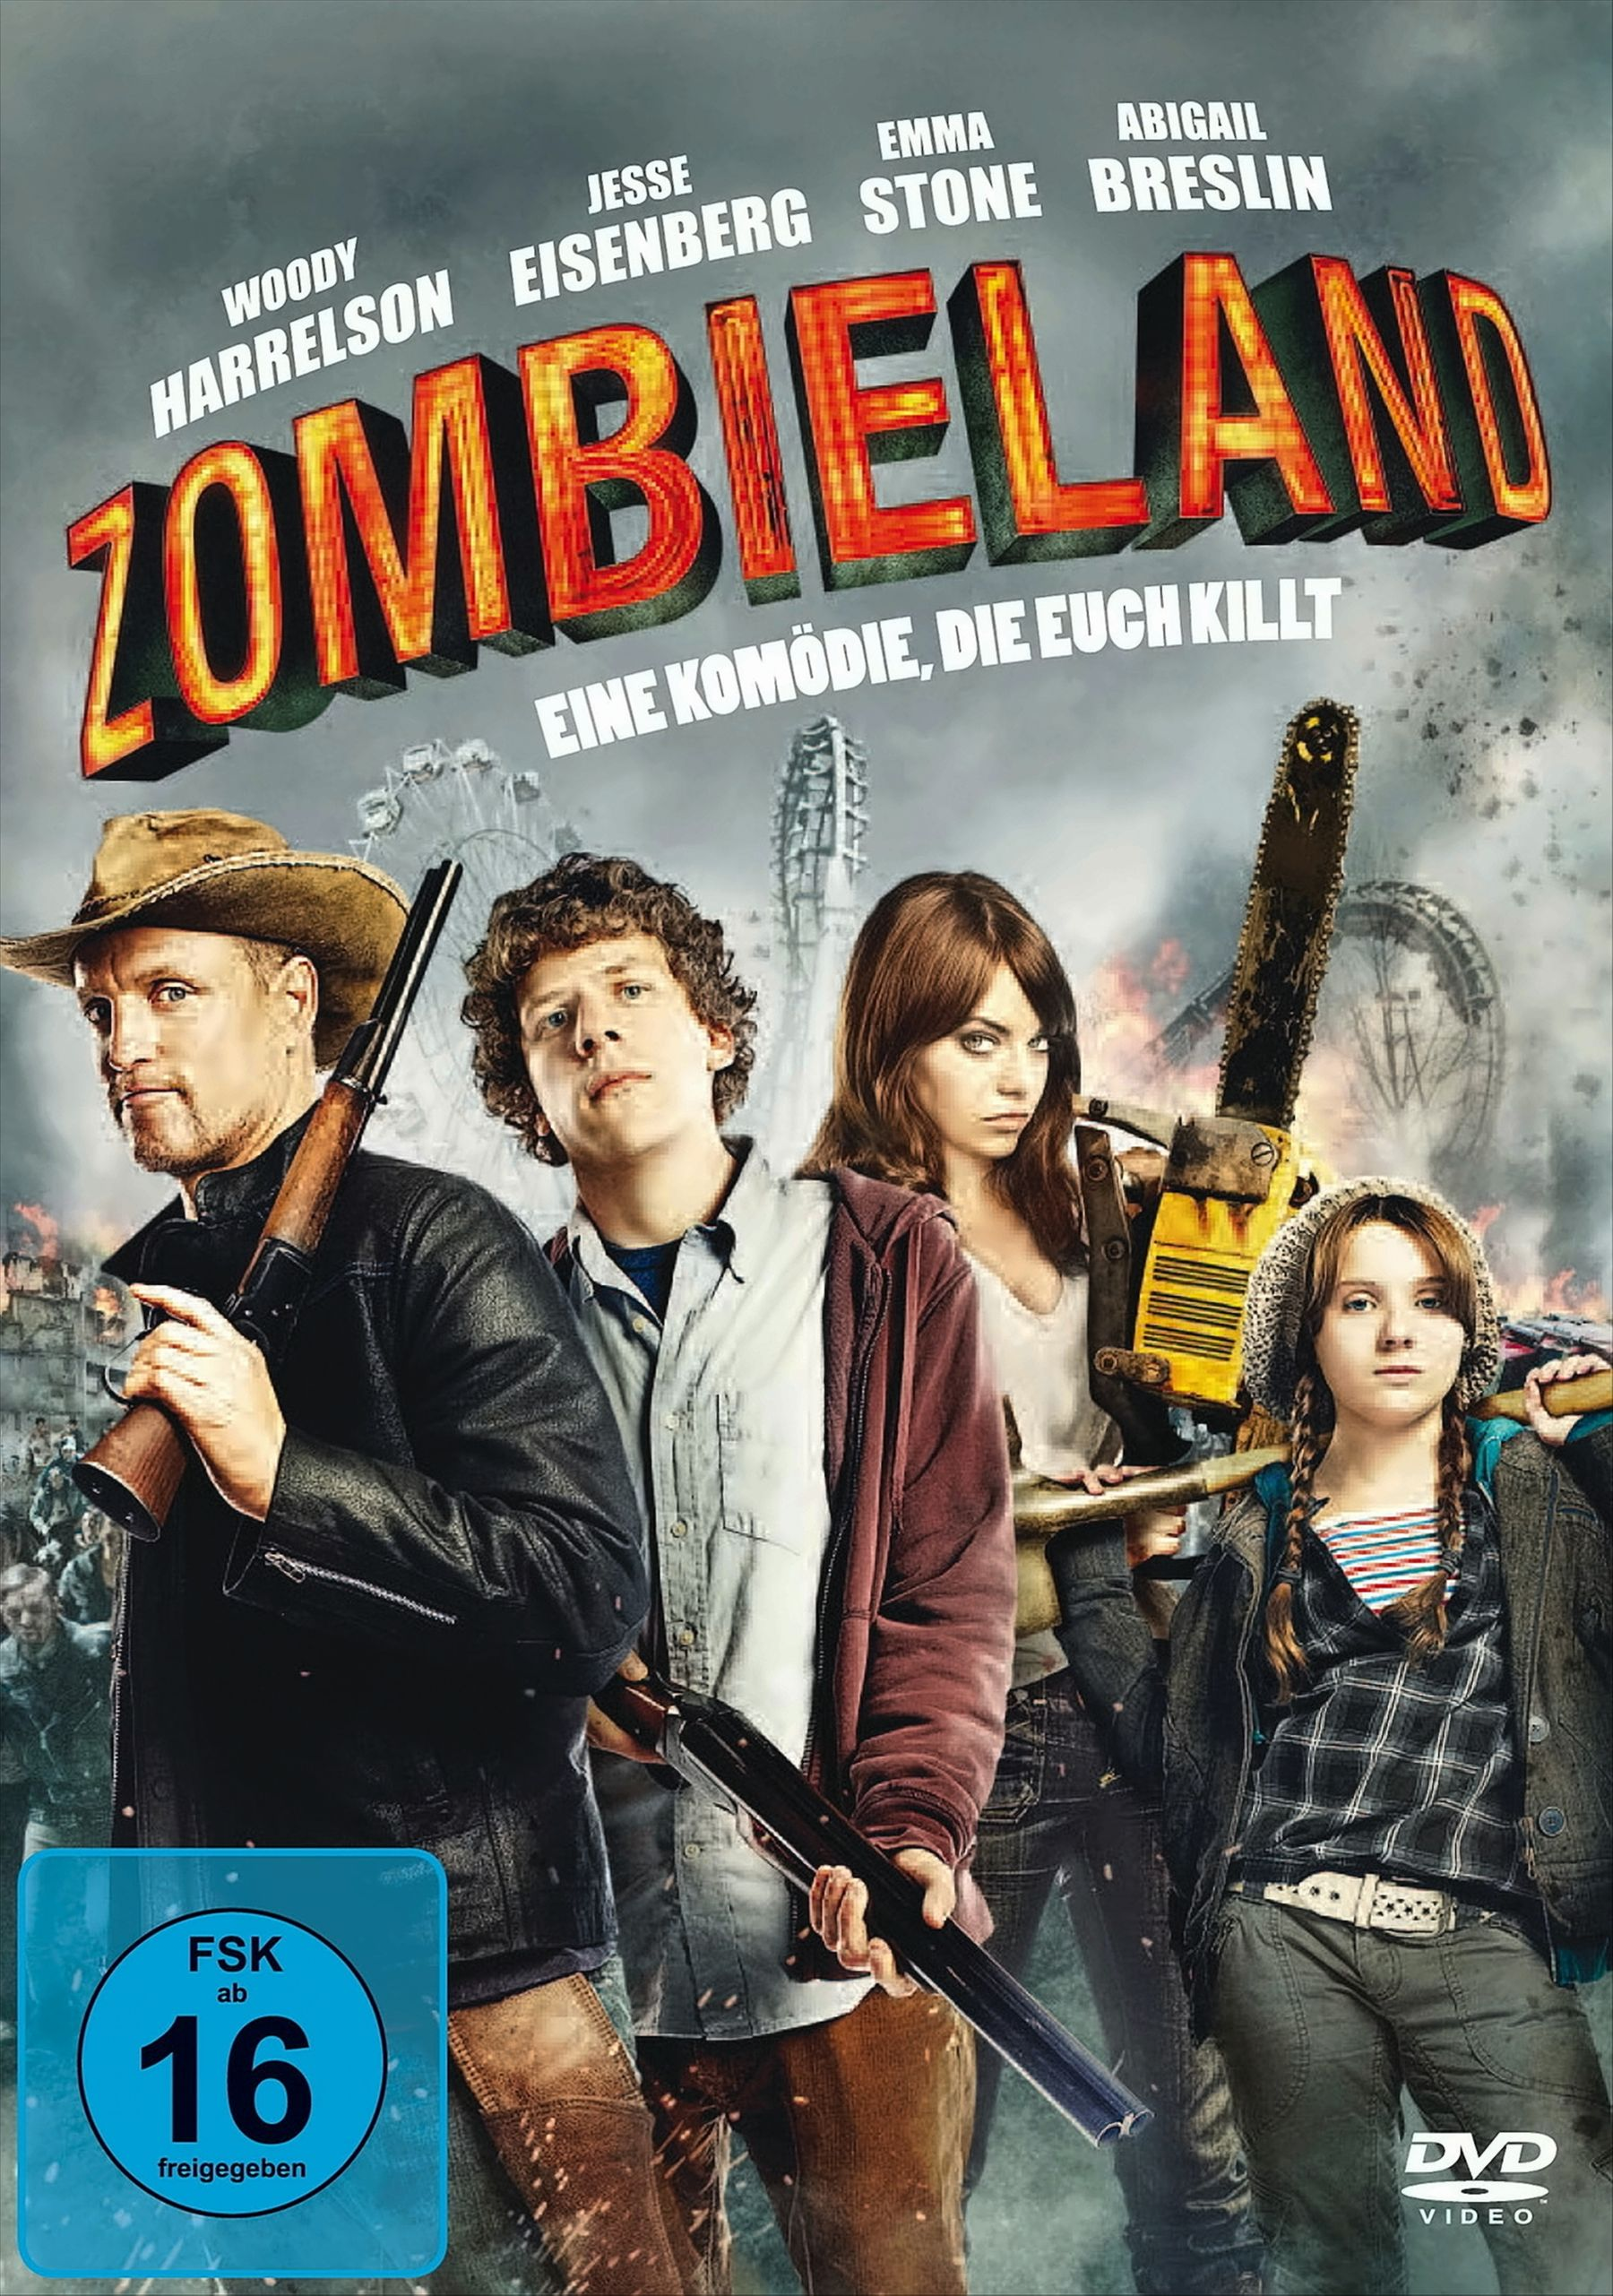 (I Good!) Feel DVD Zombieland